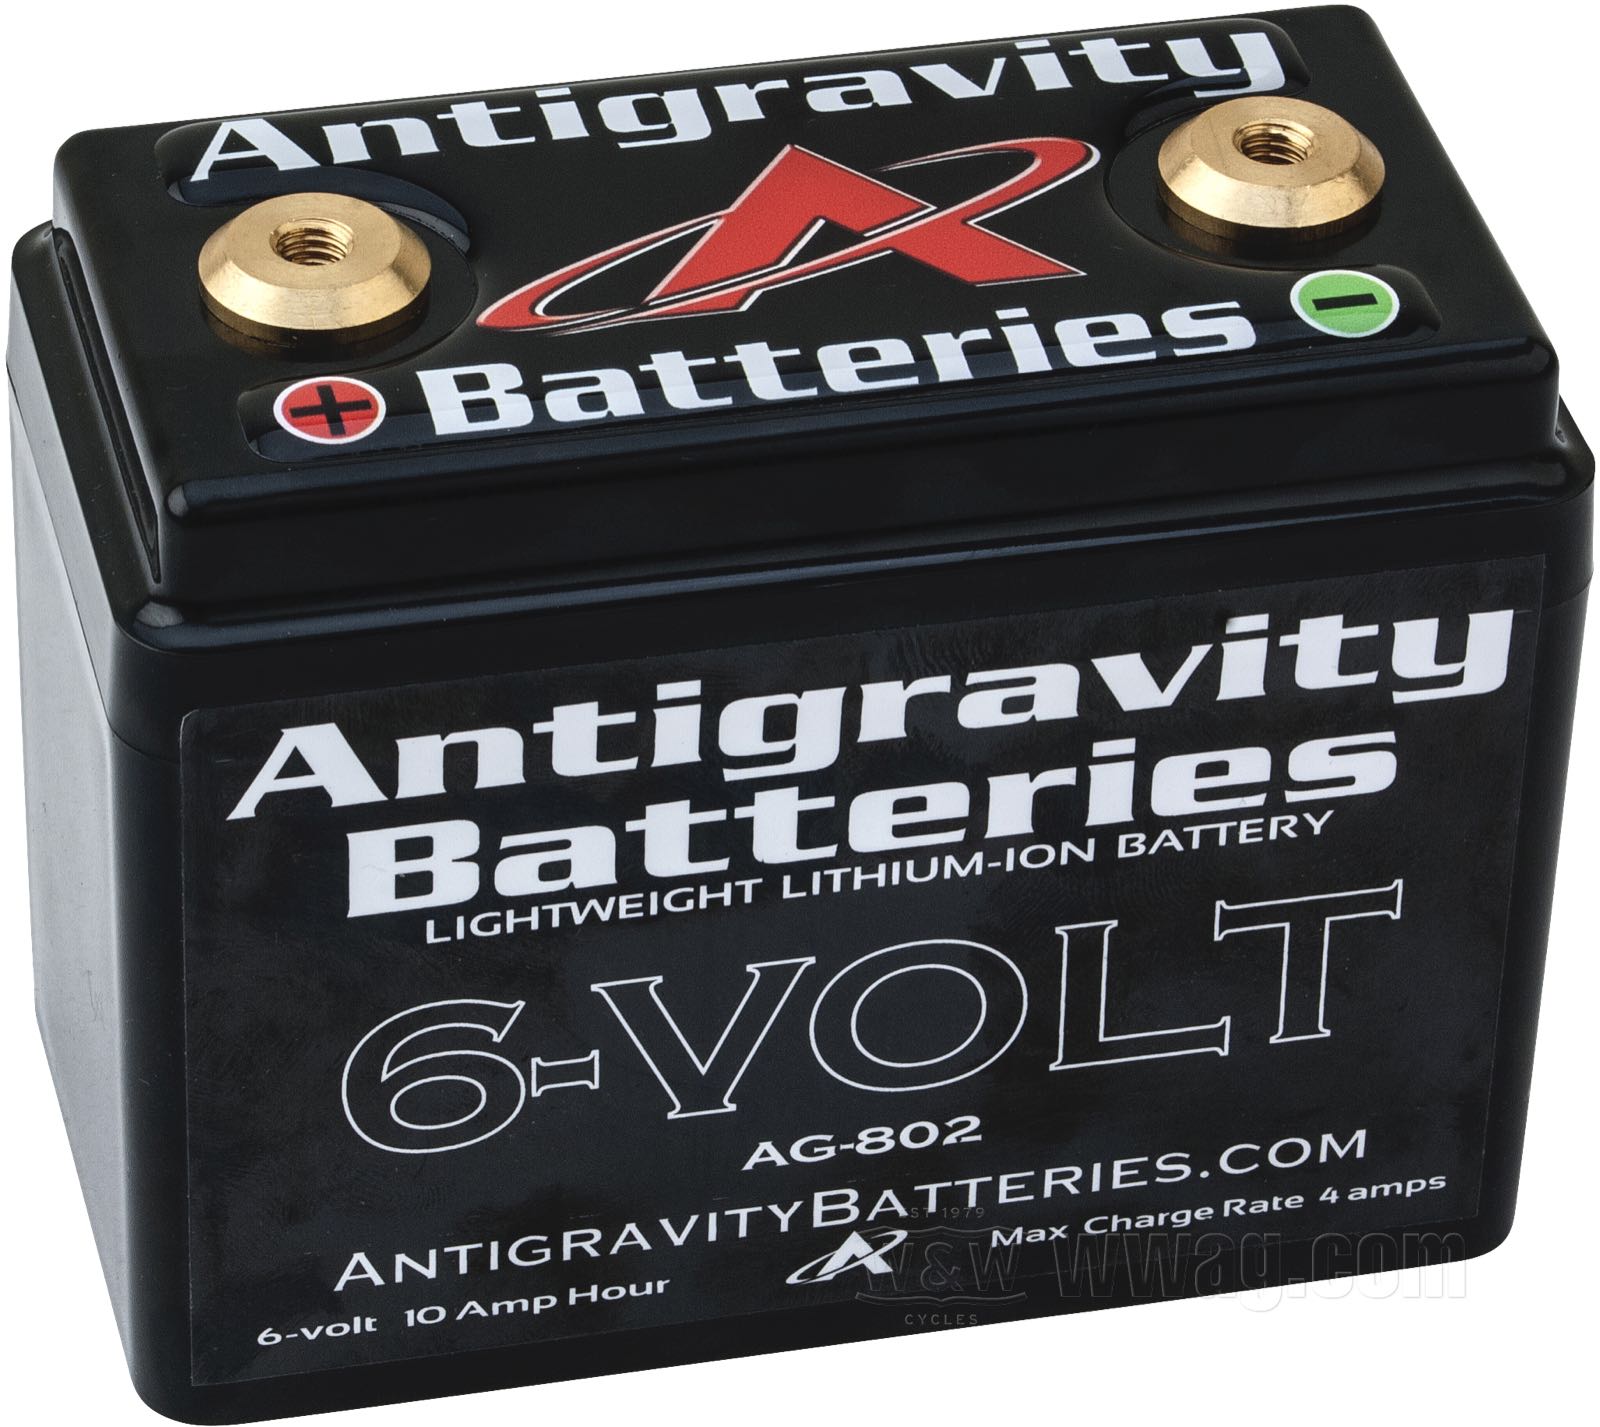 6V 10V Baterrie für Rutscher Auto Elektroroller verschieden Modelle & Größen 